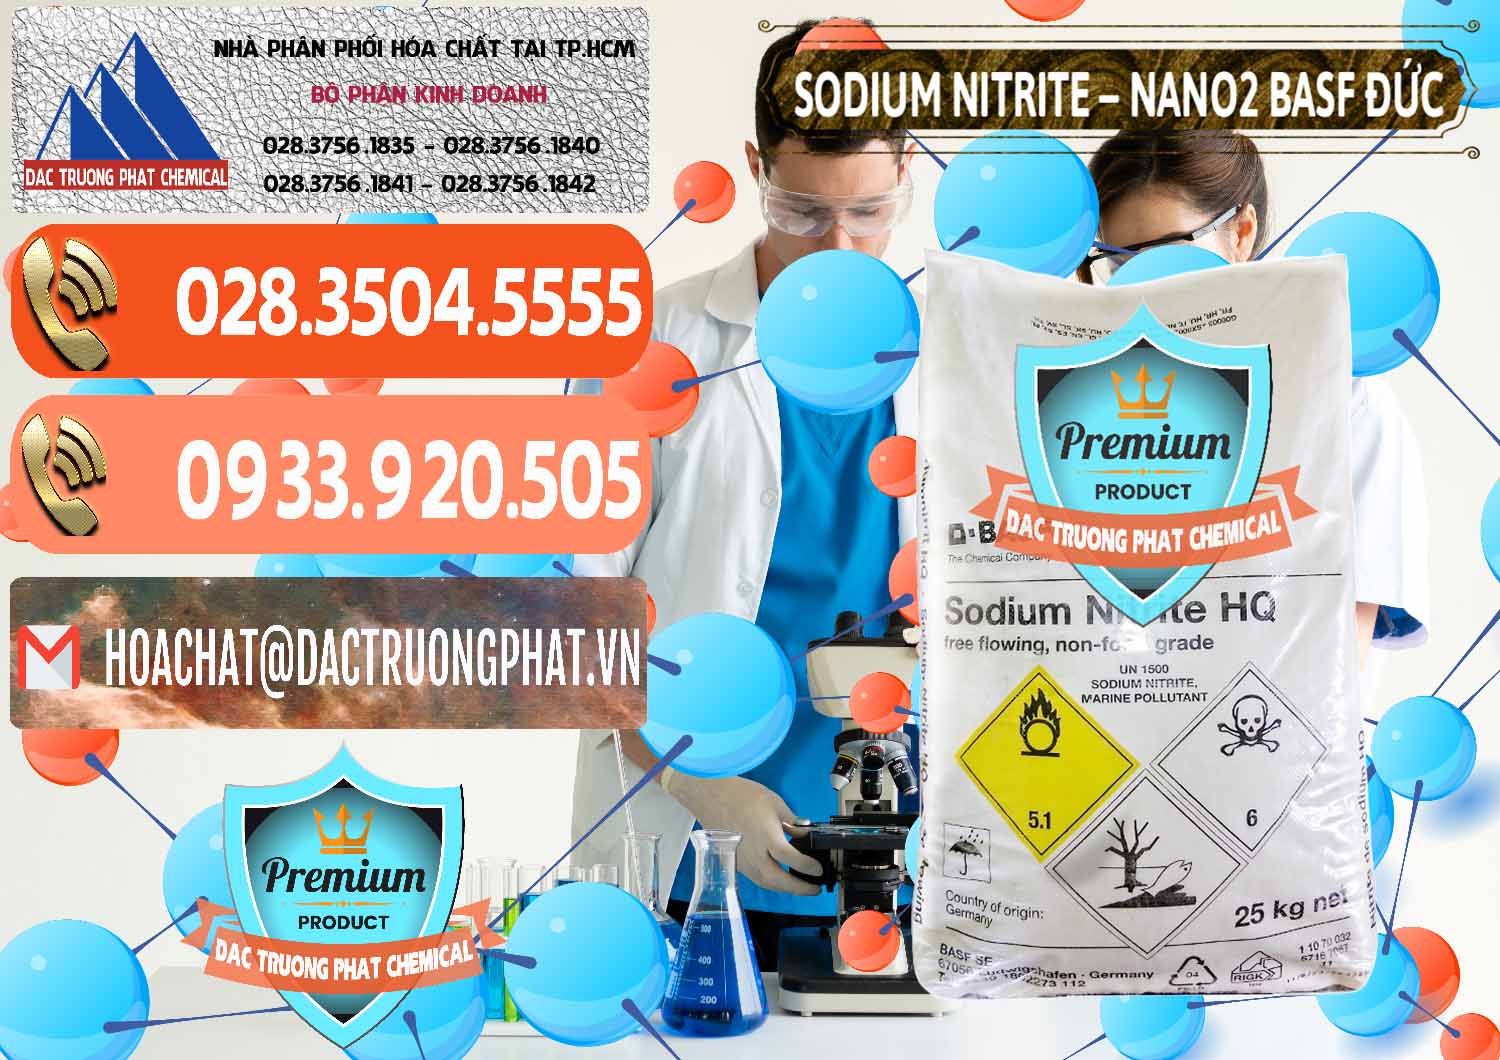 Cty kinh doanh & bán Sodium Nitrite - NANO2 Đức BASF Germany - 0148 - Nơi cung cấp và bán hóa chất tại TP.HCM - hoachatmientay.com